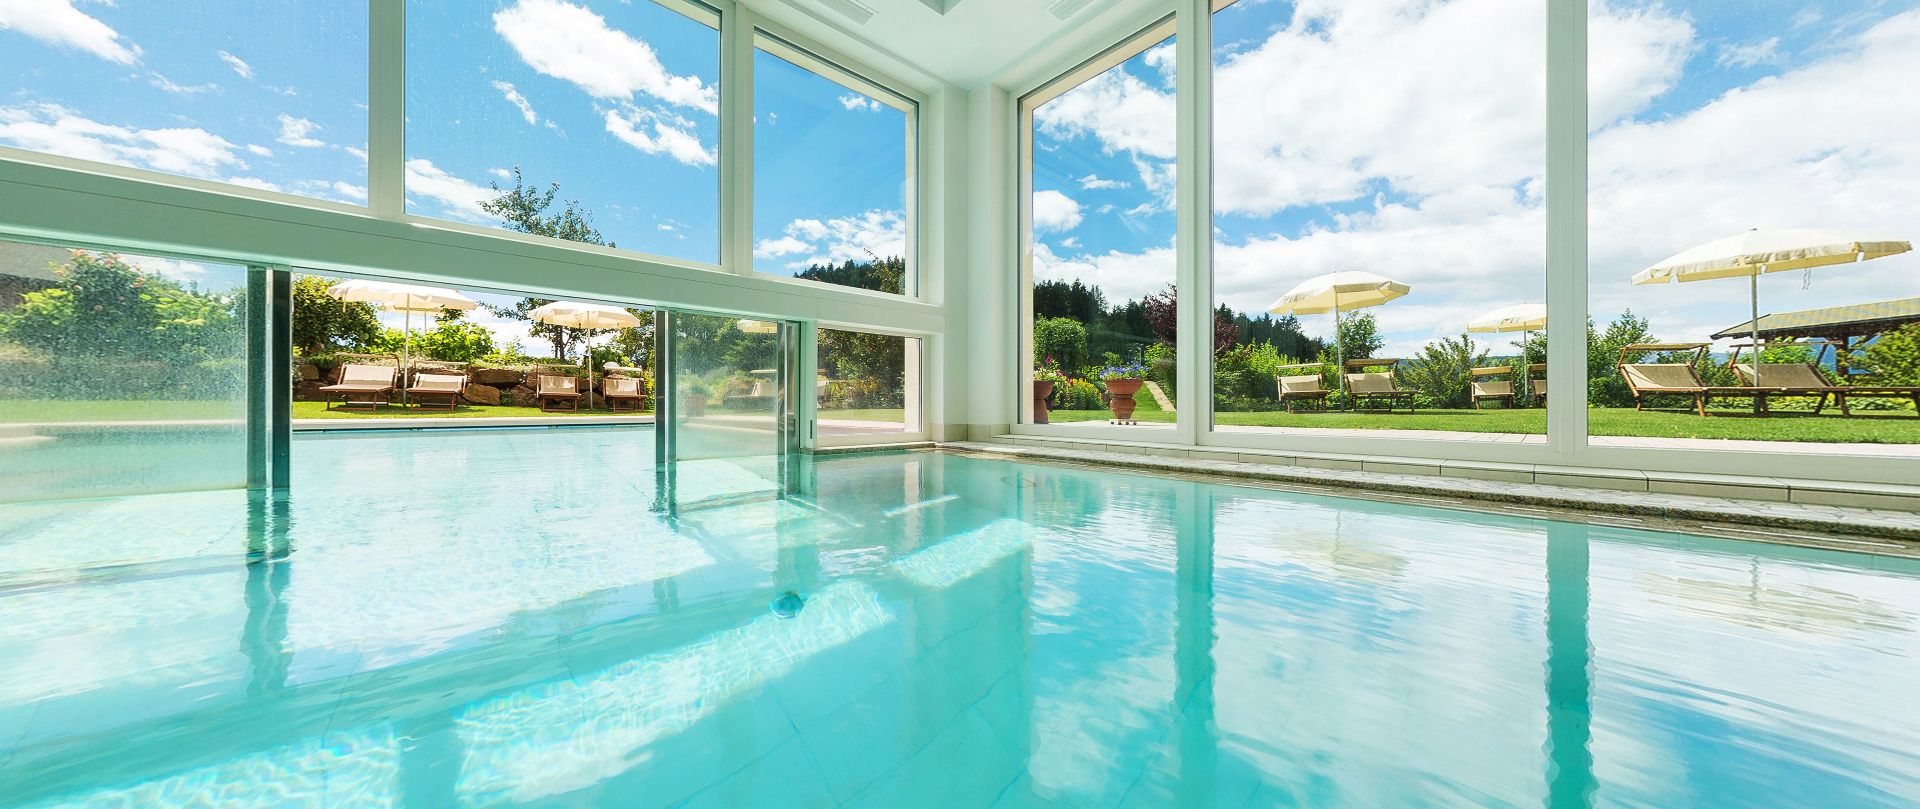 Piscina coperta, piscina, prato per prendere il sole all'Hotel Sulfner in Alto Adige